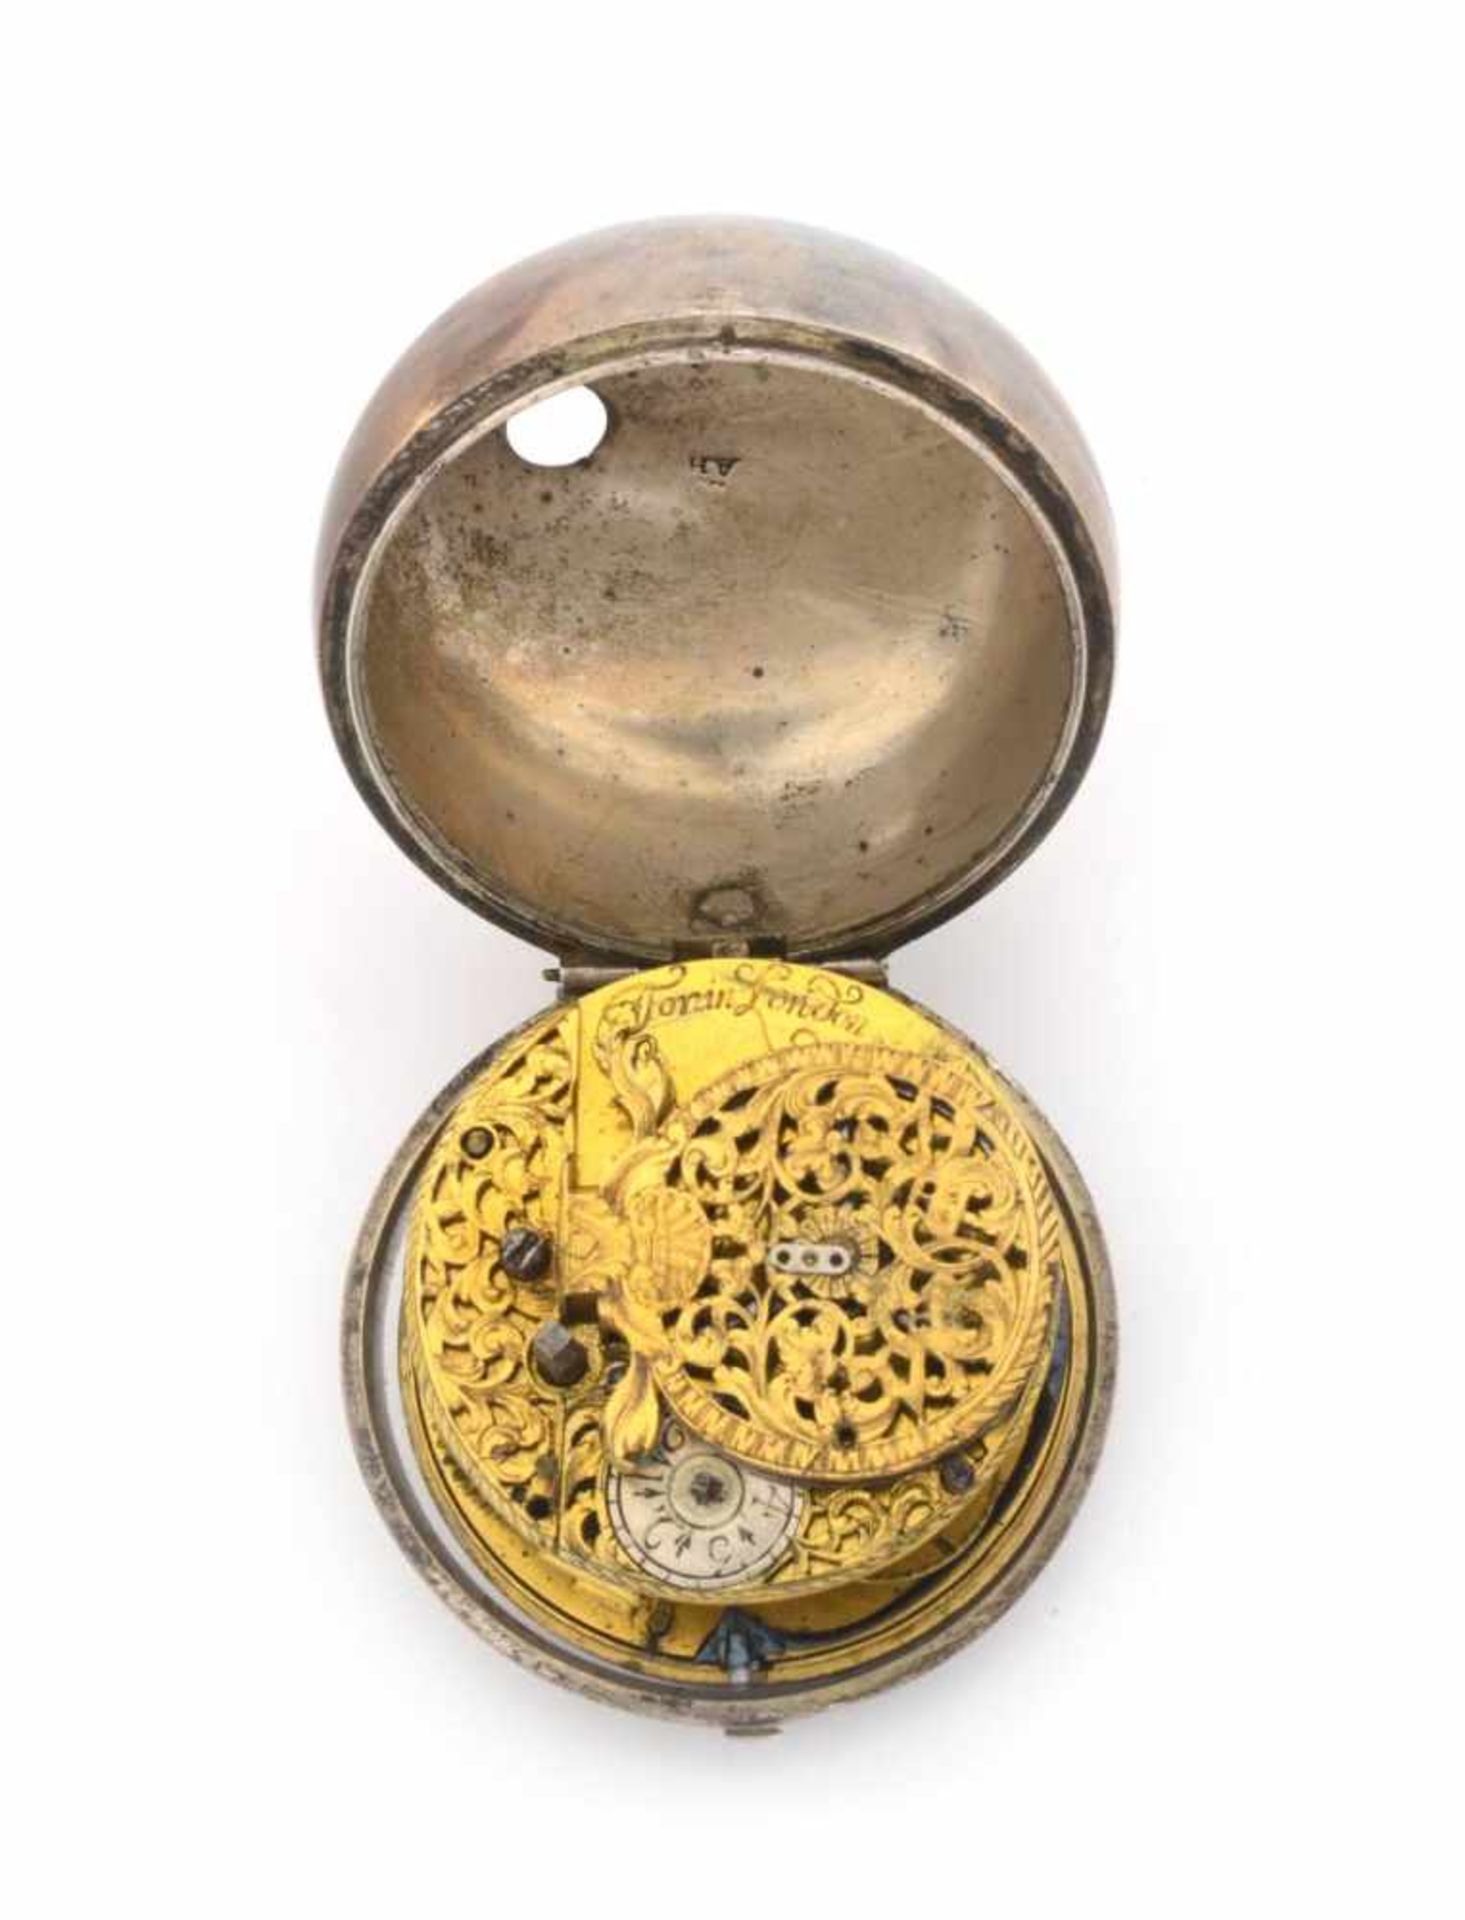 SILBERNE TASCHENUHREngland, London, Torin1730s - 1740sSilberne Taschenuhr, Gesamtgewicht (brutto) - Bild 2 aus 5